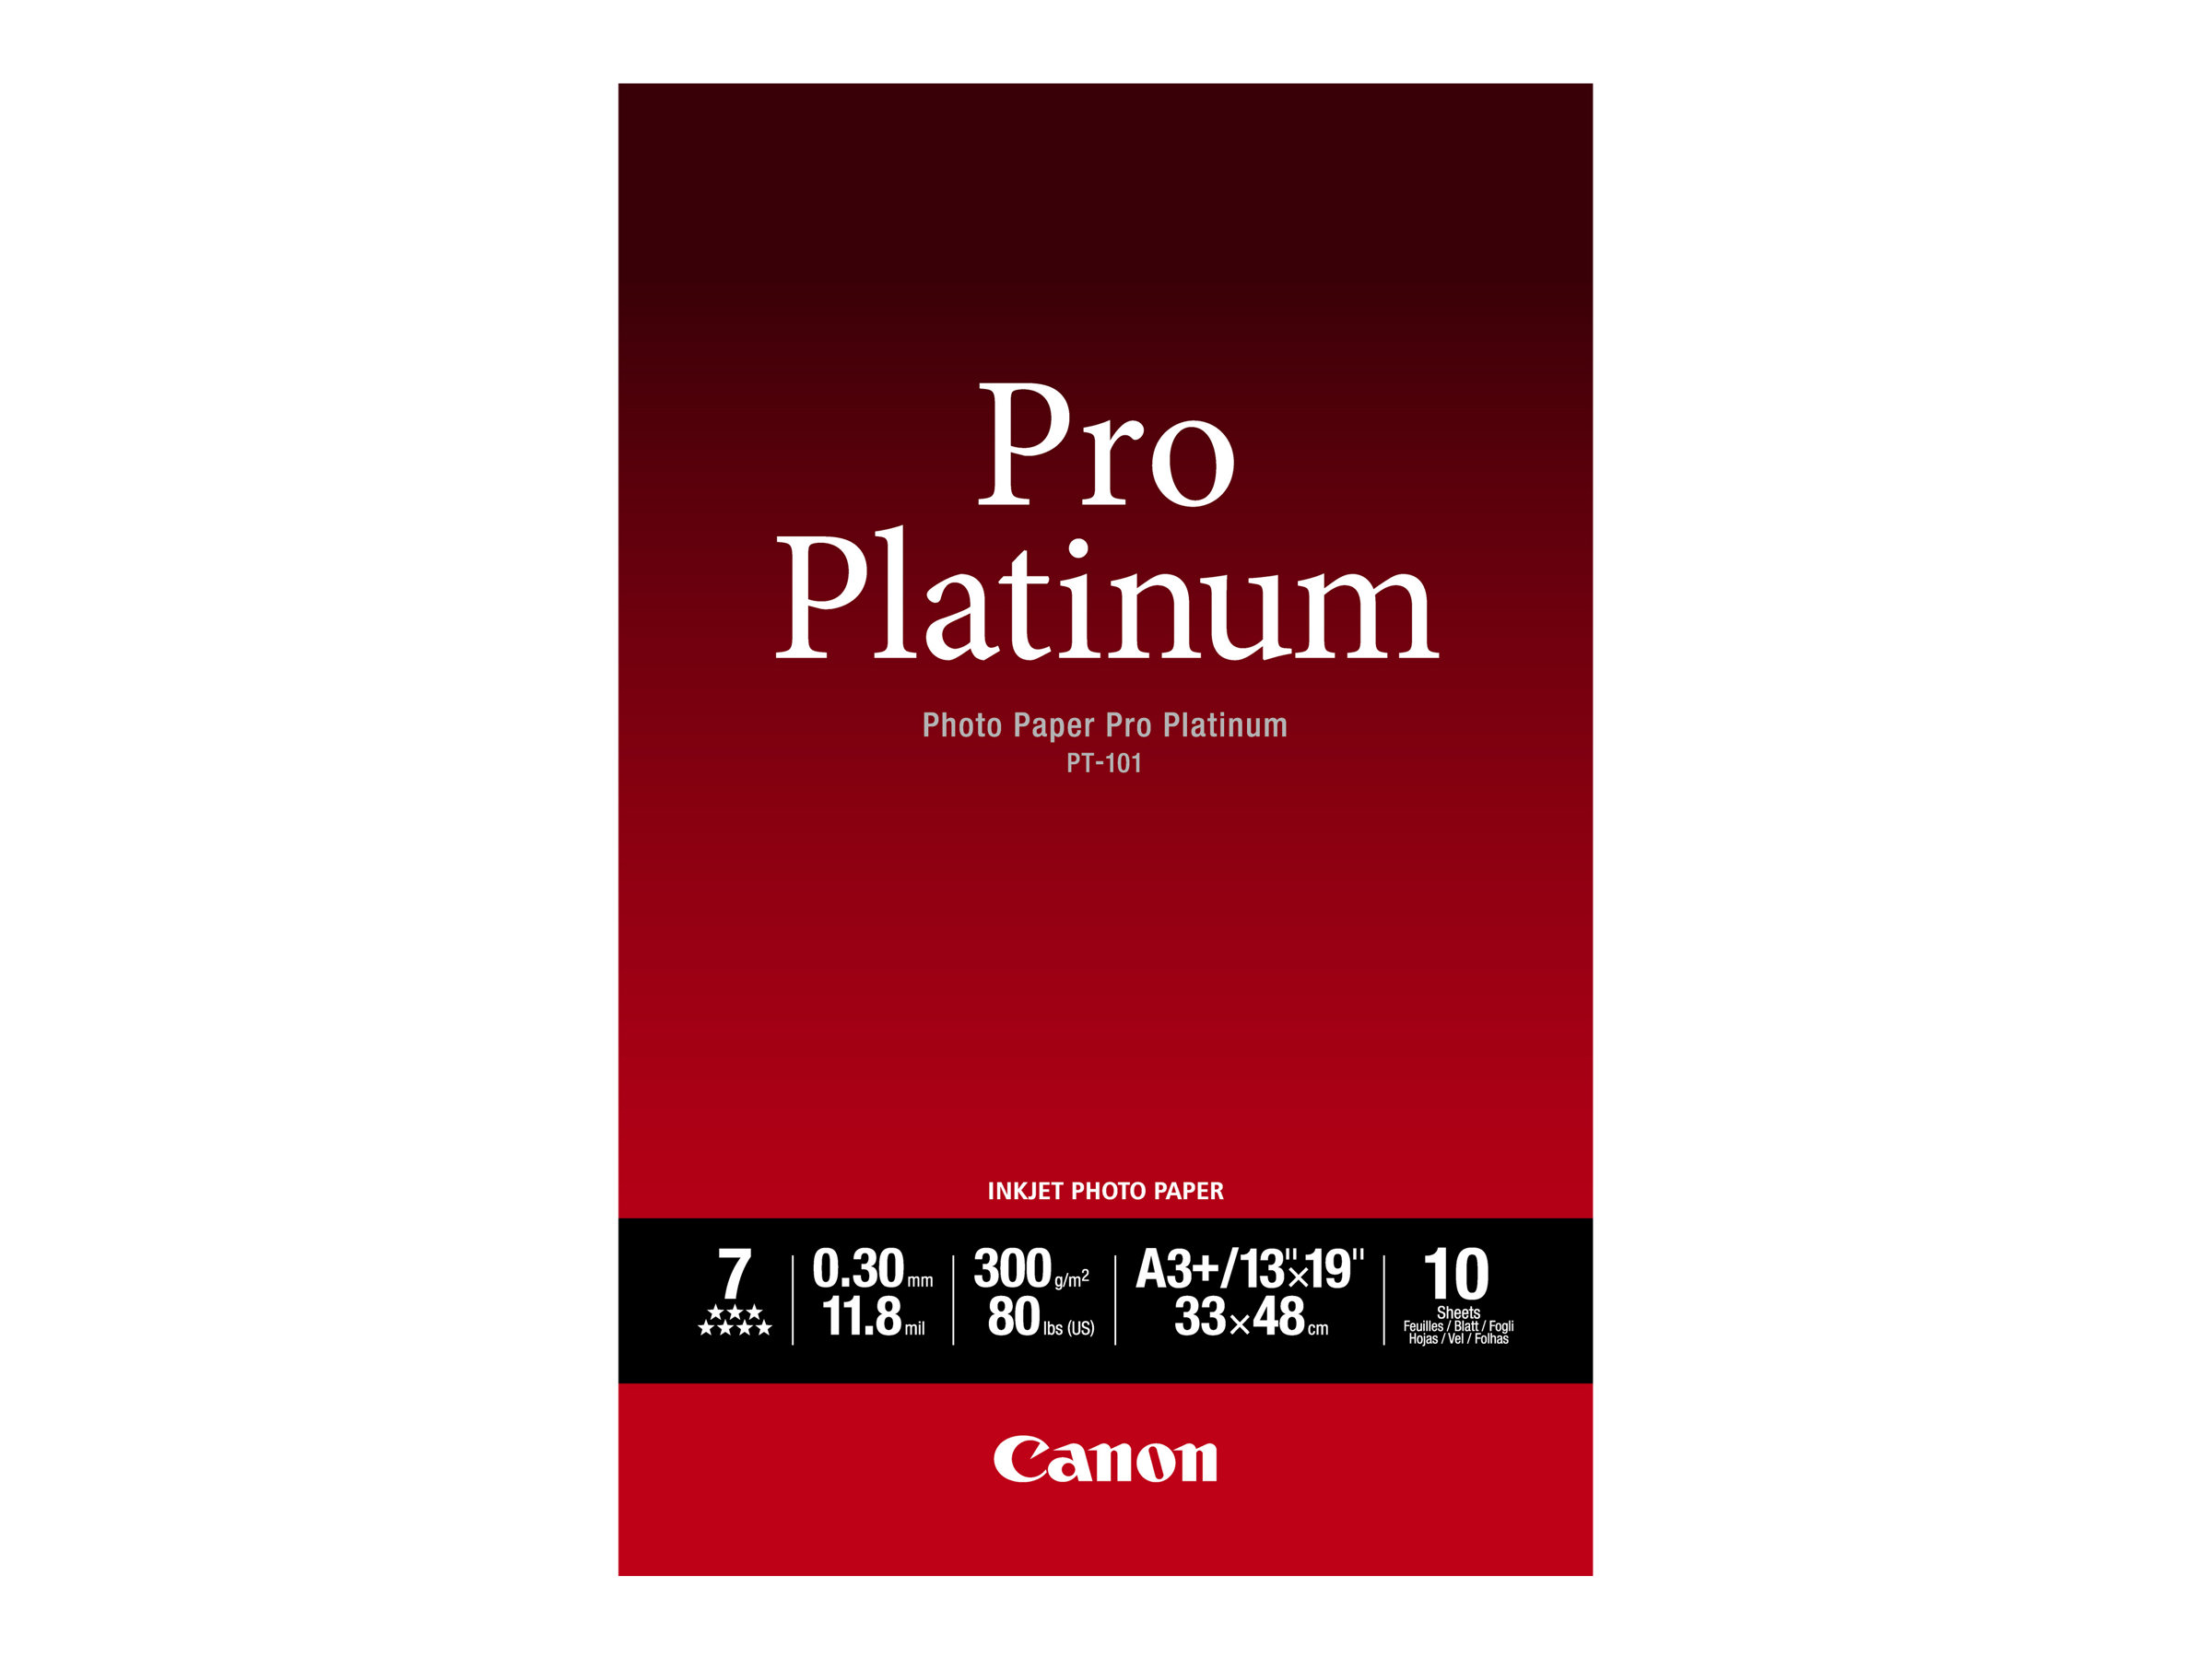 Canon Photo Paper Pro Platinum - A3 plus (329 x 423 mm) - 300 g/m² - 10 feuille(s) papier photo - pour PIXMA iP8720, IX6820, PRO-1, PRO-10, PRO-100, Pro9000, Pro9000 Mark II, Pro9500 - 2768B018 - Papier photo